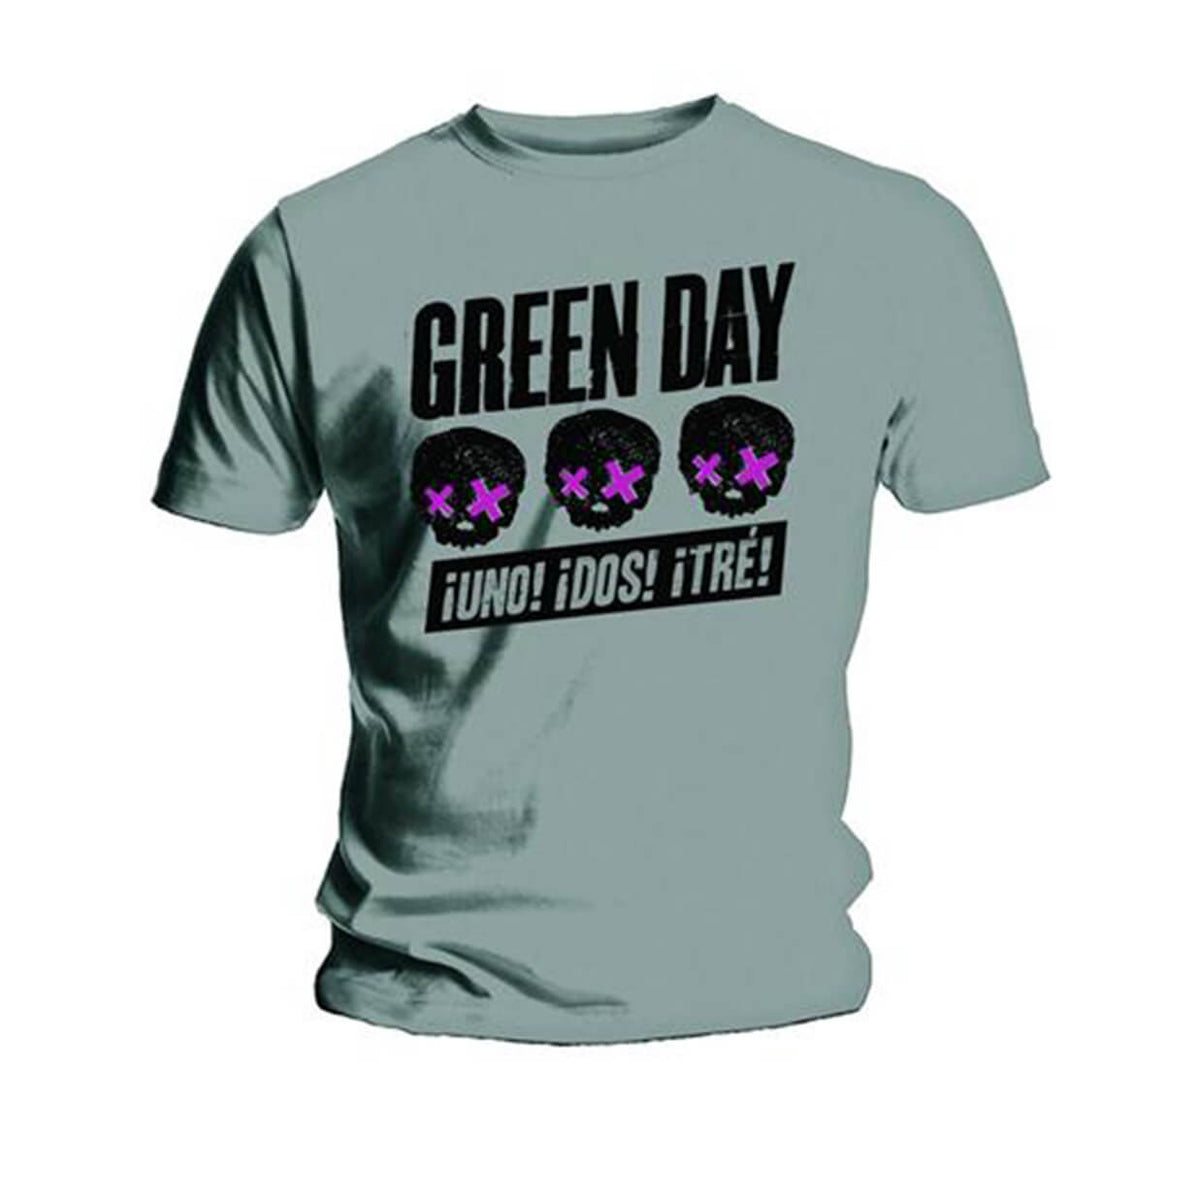 Vinyl - Green Day : 3 Heads Better Than 1 - T-Shirt - The Record Hub